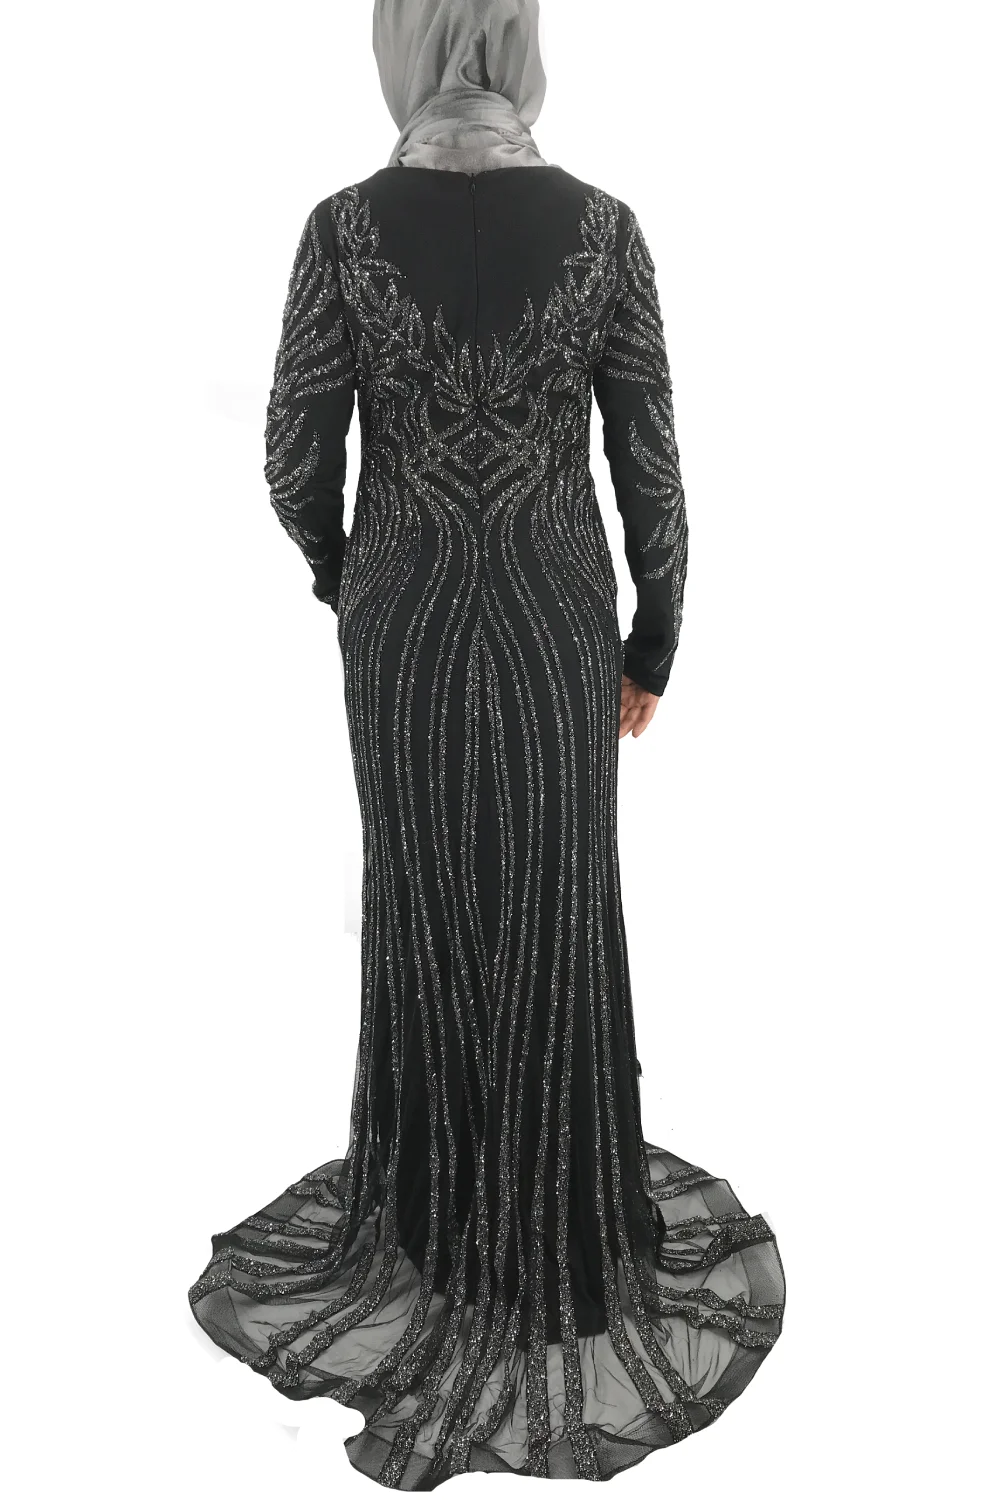 Sara Mermaid Black Dress